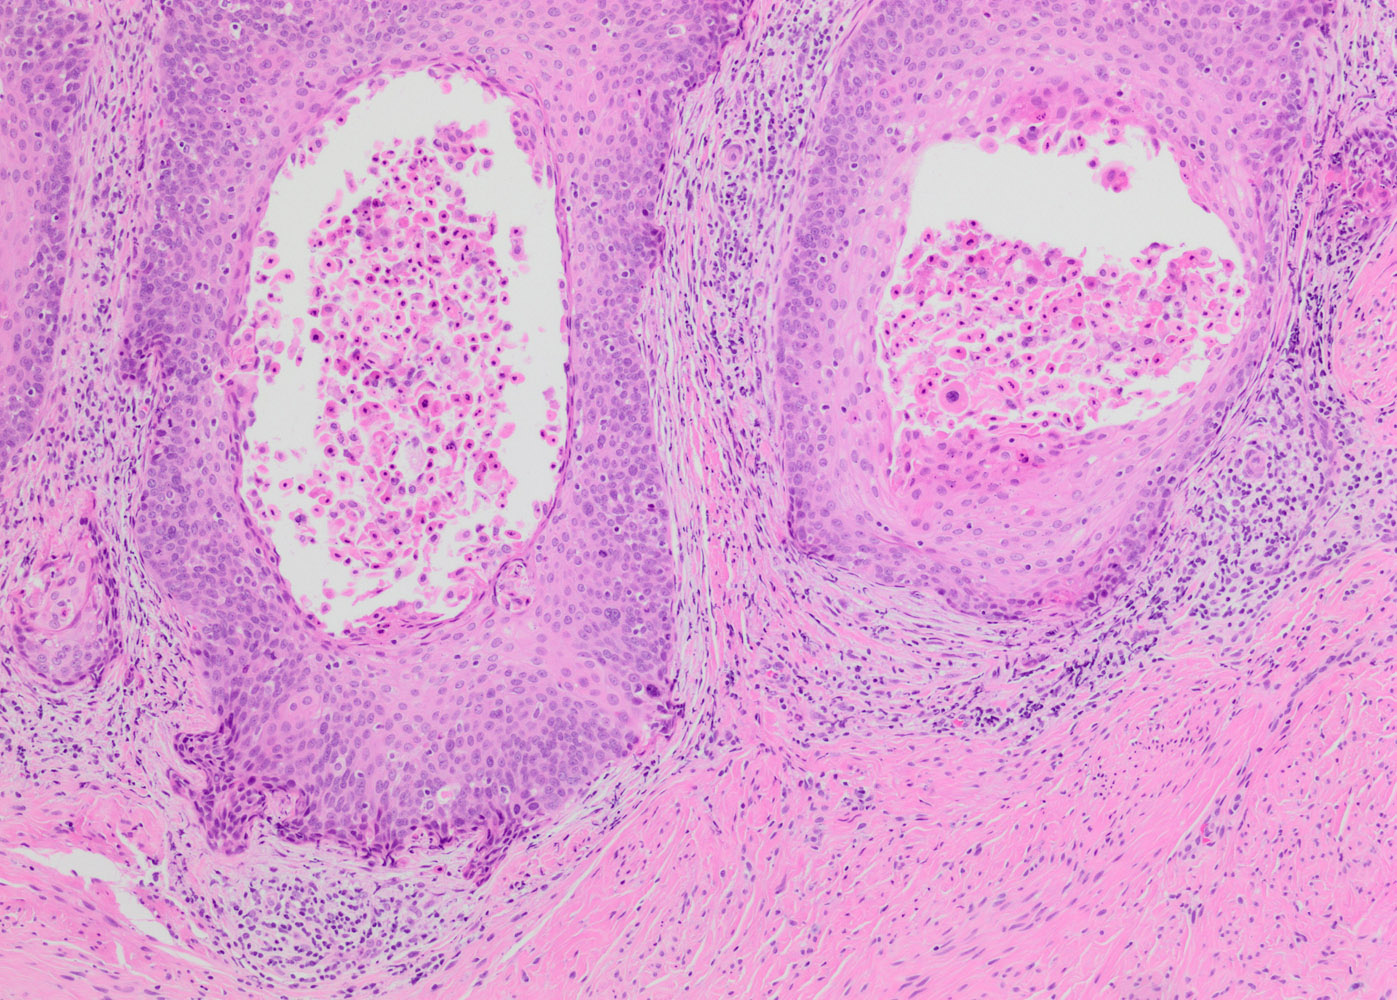 Invasive squamous cell carcinoma